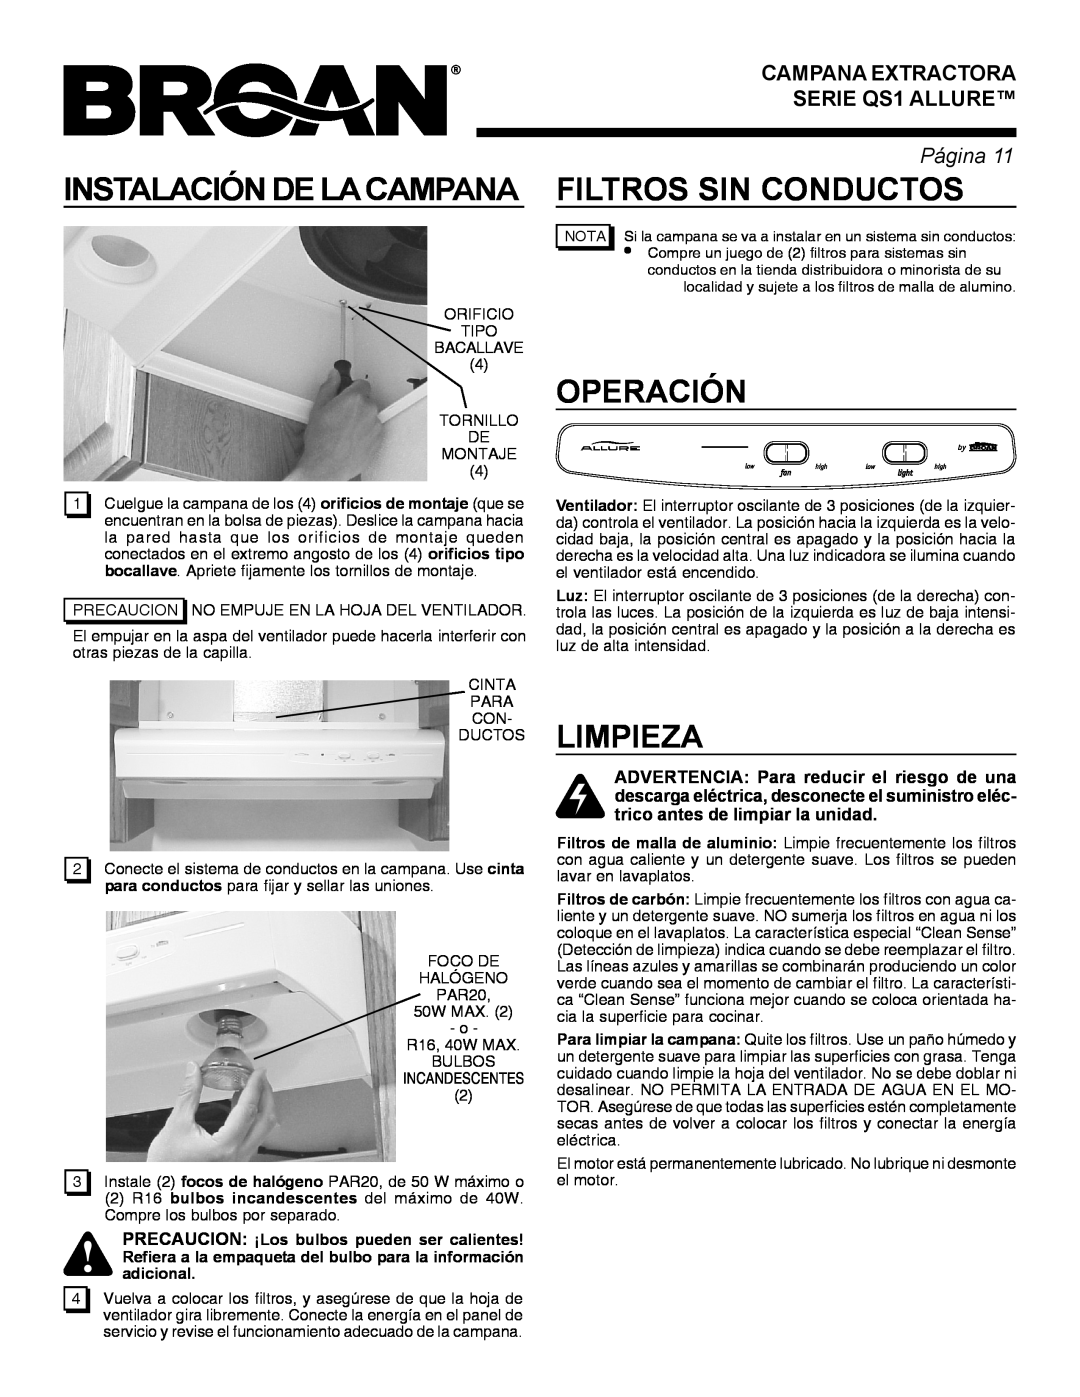 Broan QS1 warranty Instalación De La Campanafiltros Sin Conductos, Operación, Limpieza, adicional, Página 